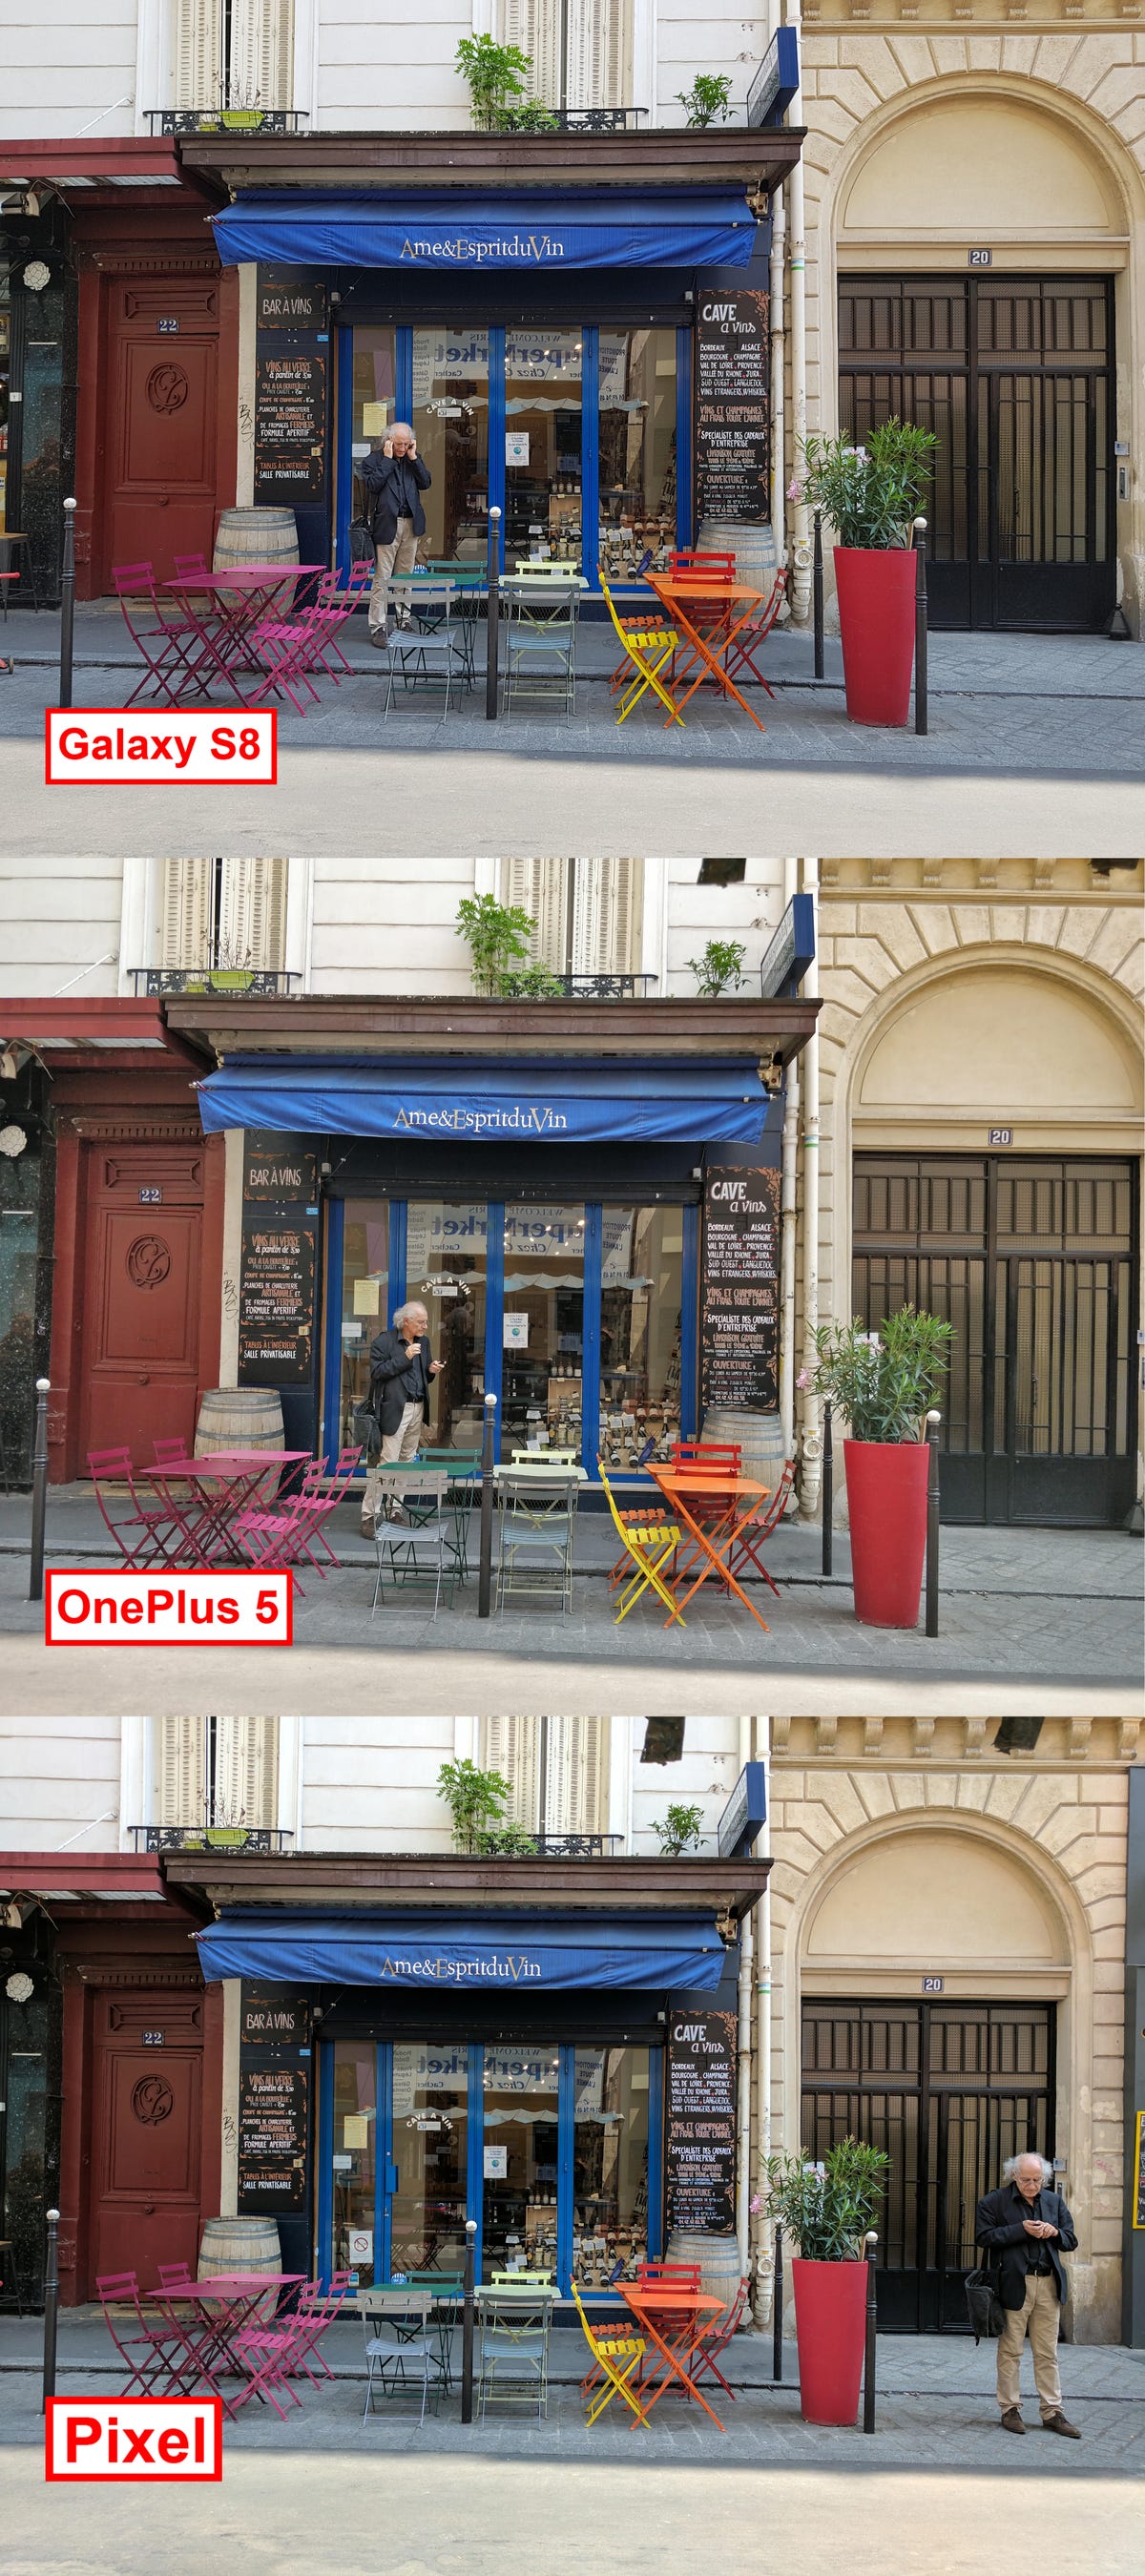 france-shop-galaxy-s8-one-plus-5-pixel-comparison